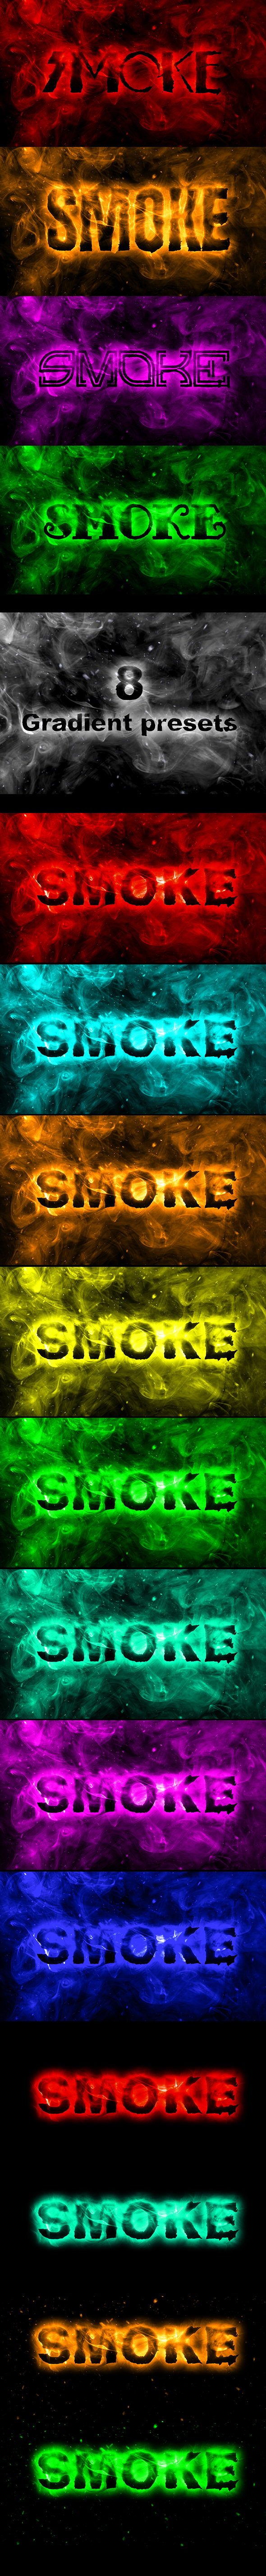 Realistic Smoke Editable Text